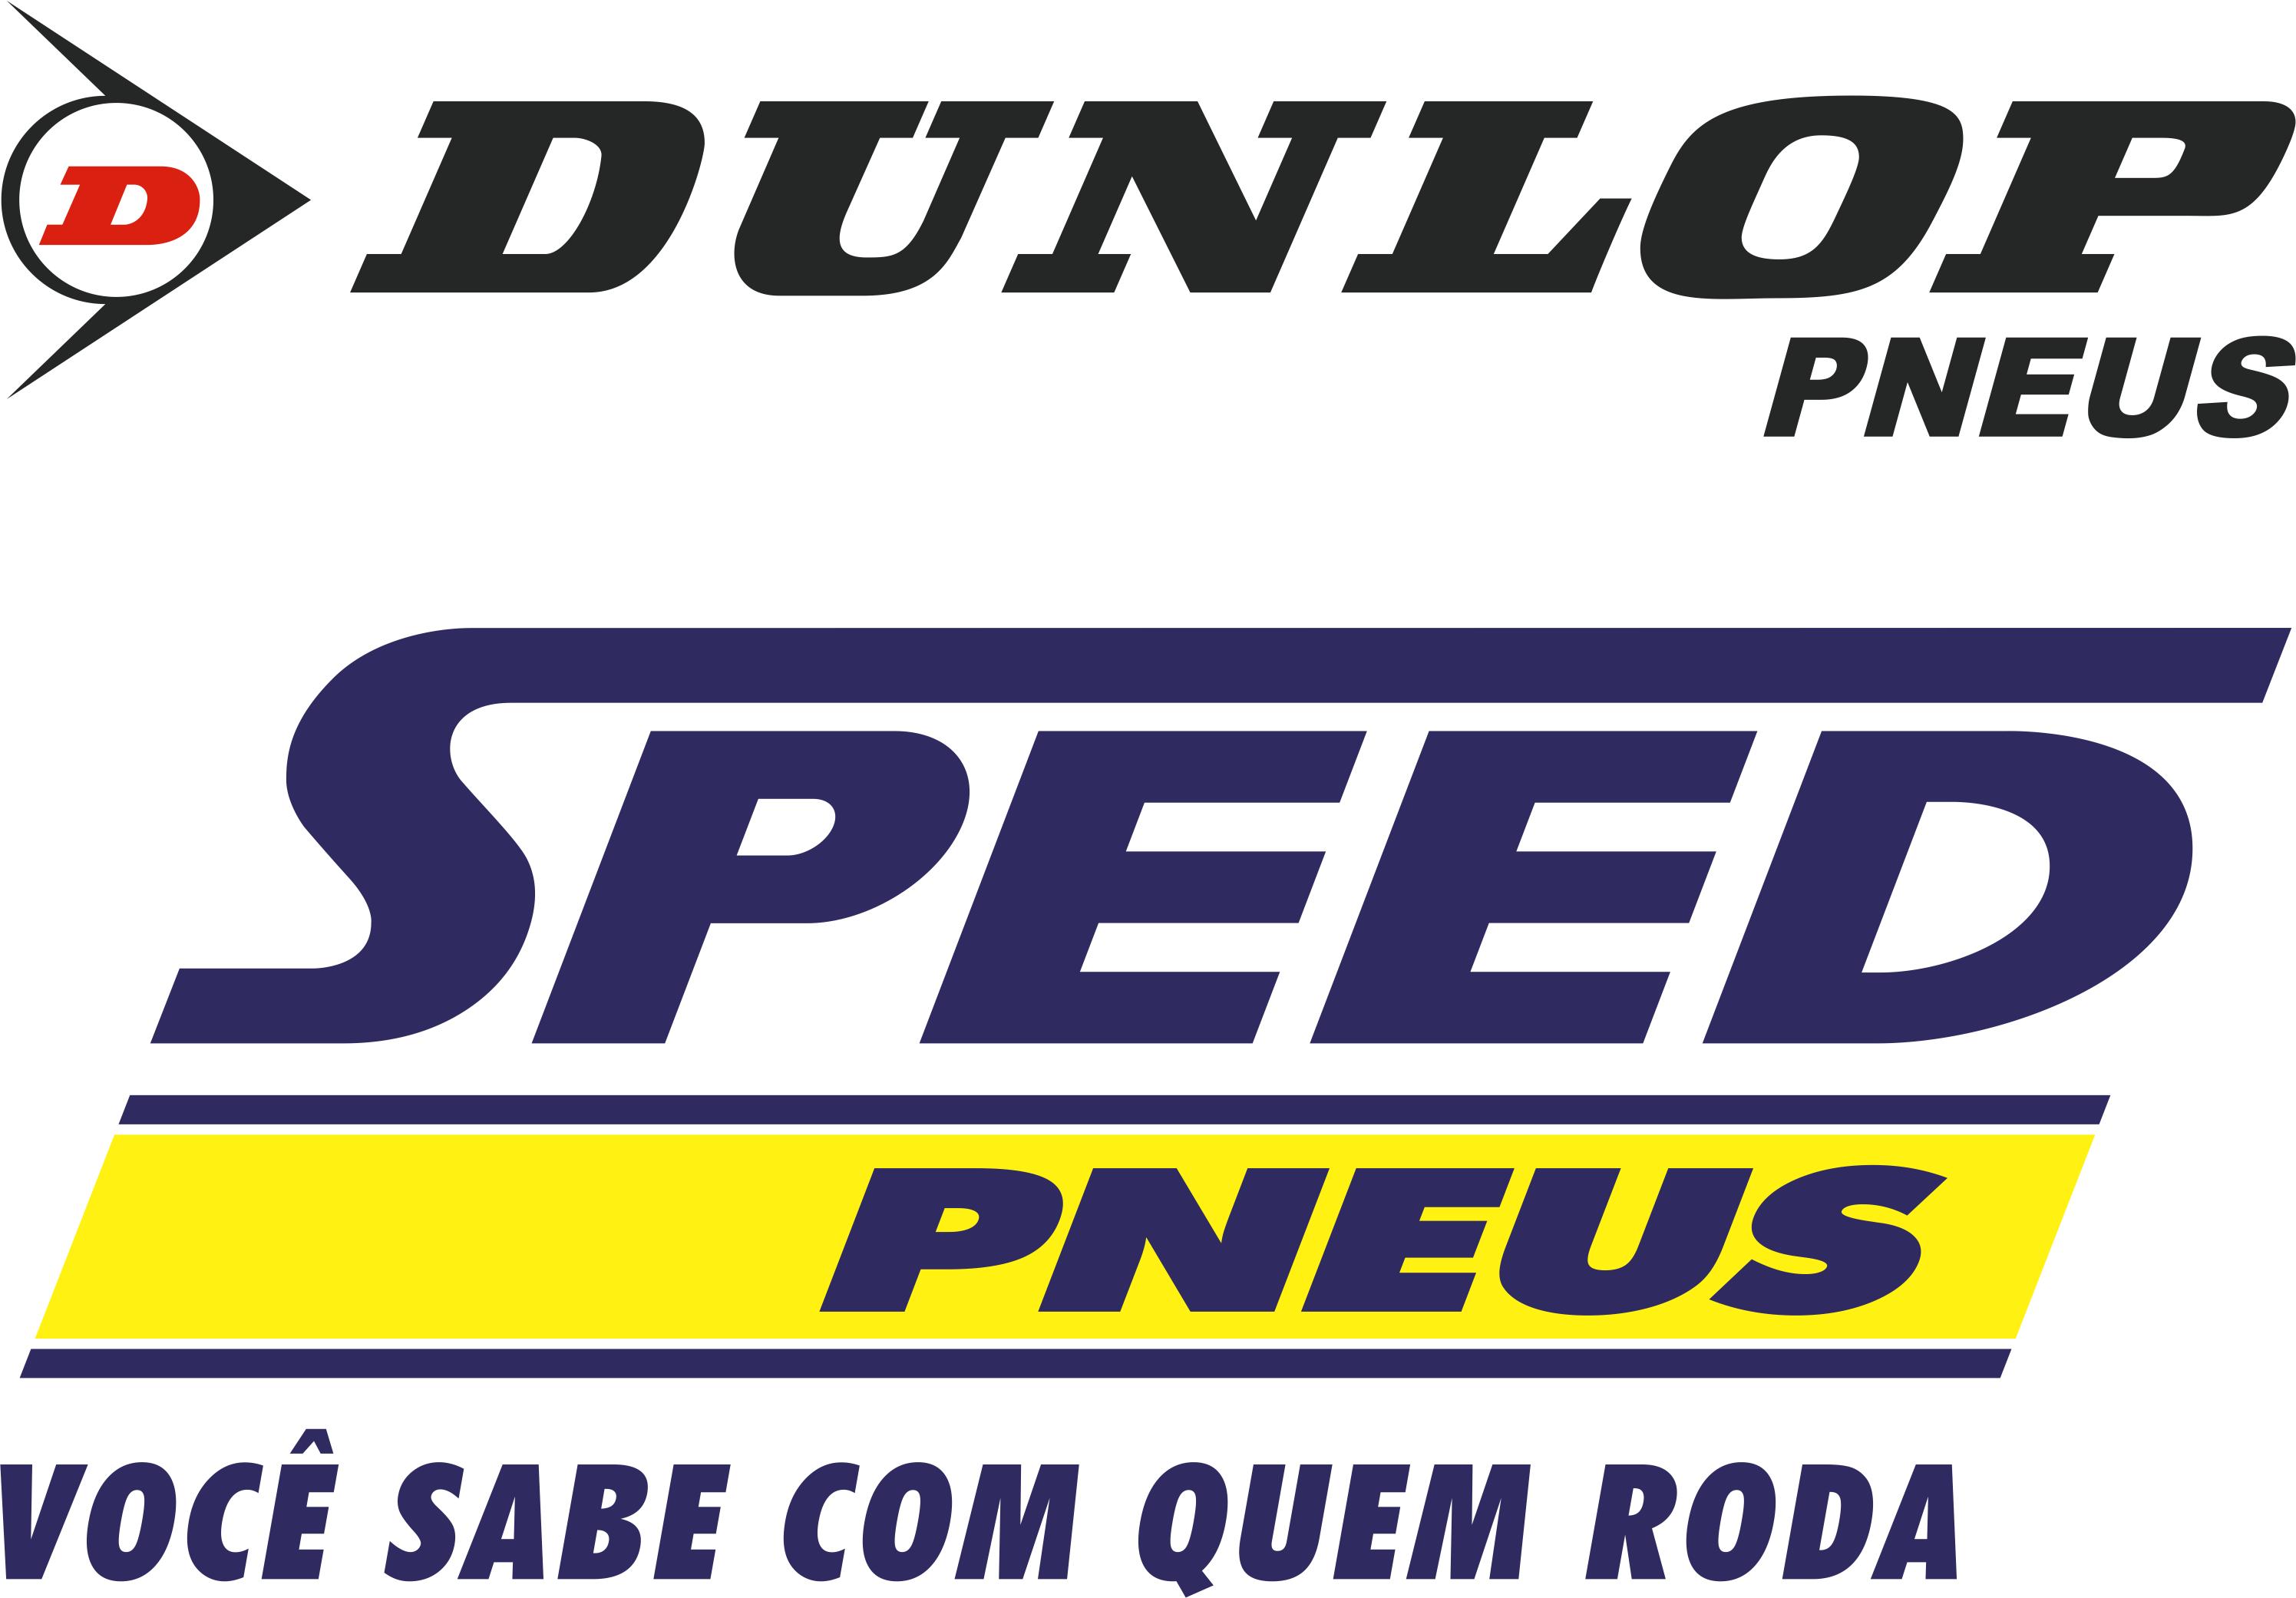 Speed Pneus Dunlop